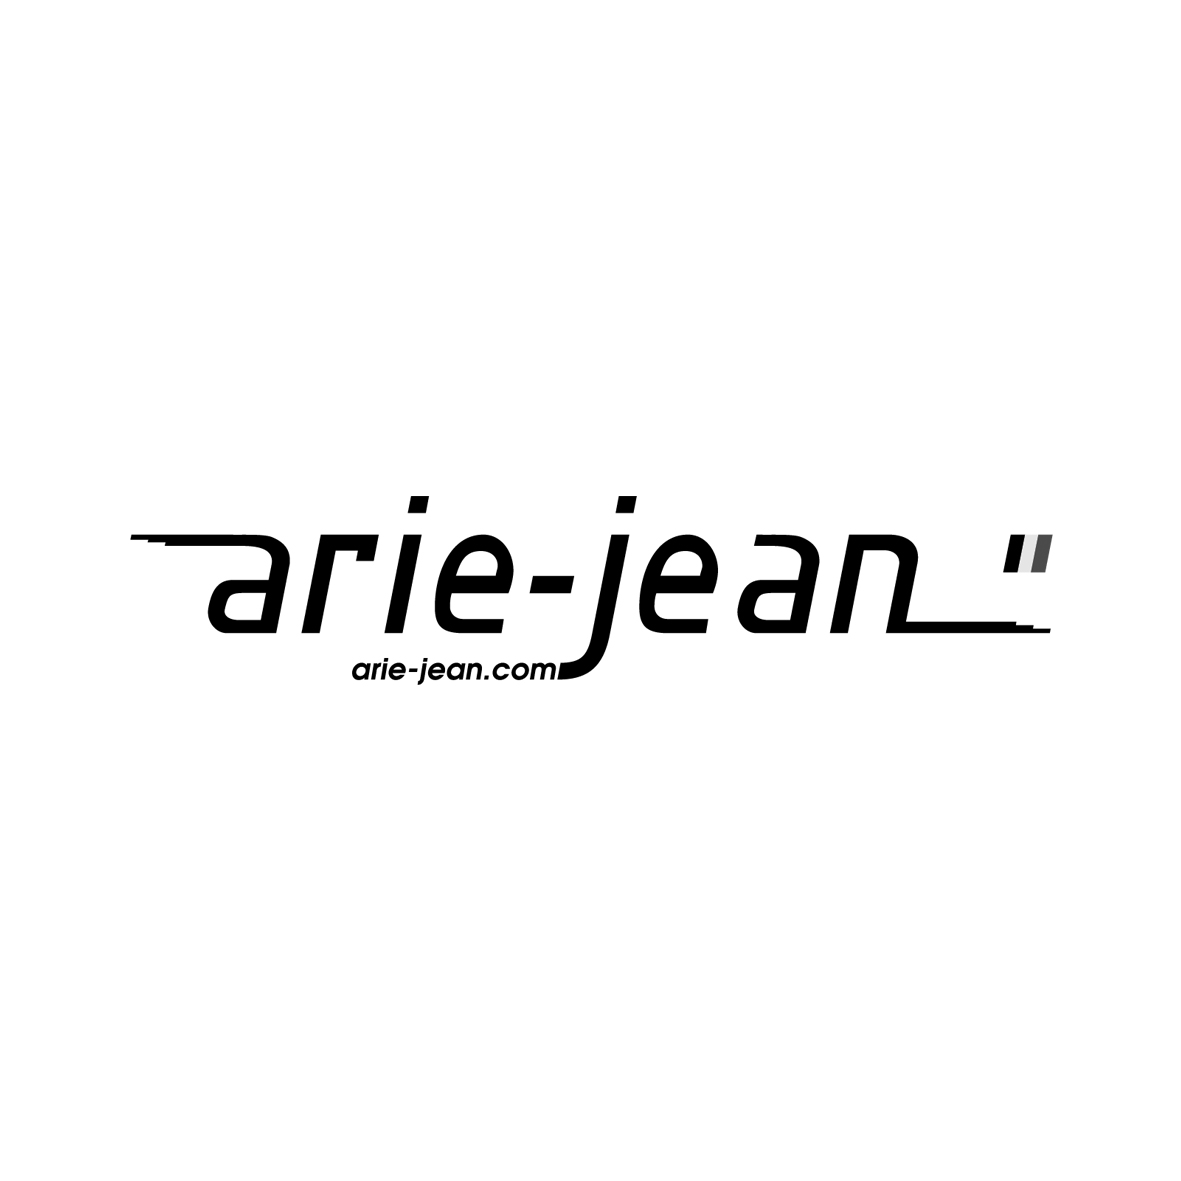 Arie-Jean